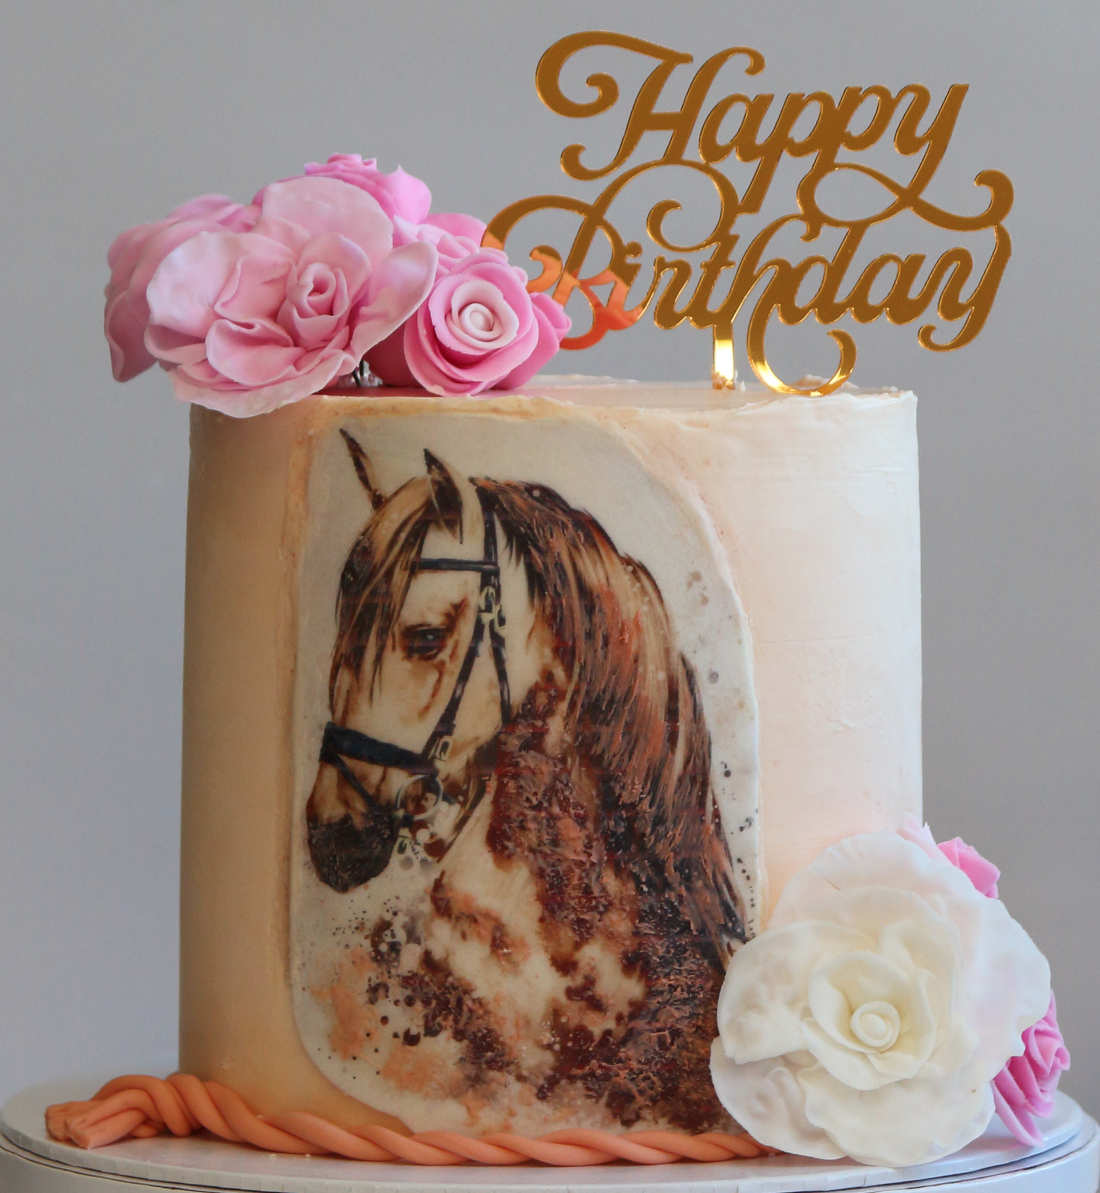 bithday cake flowers horse